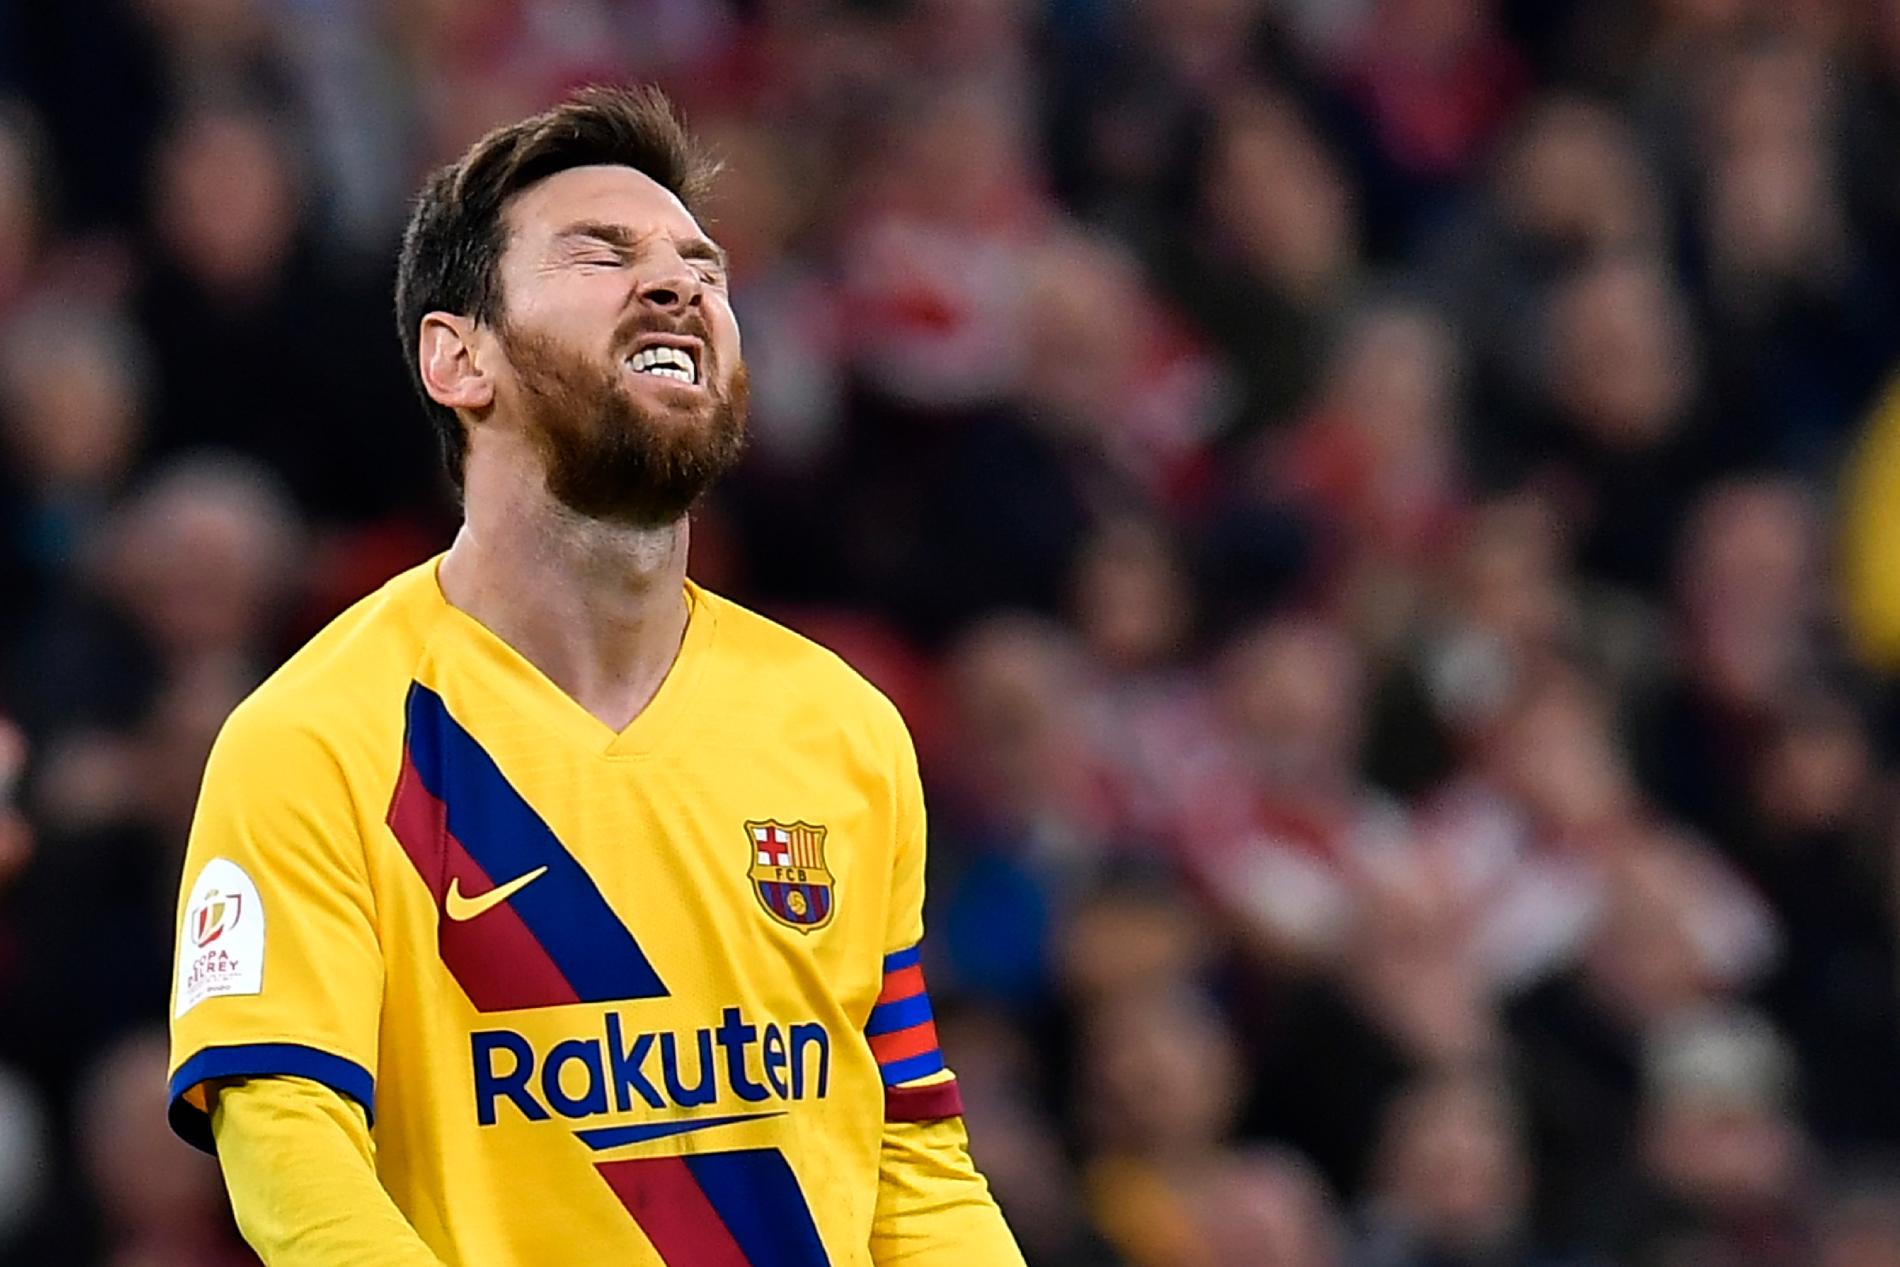 Låg klubbledningen bakom kritiken mot Lionel Messi och andra Barcelona-stjärnor? Arkivbild.